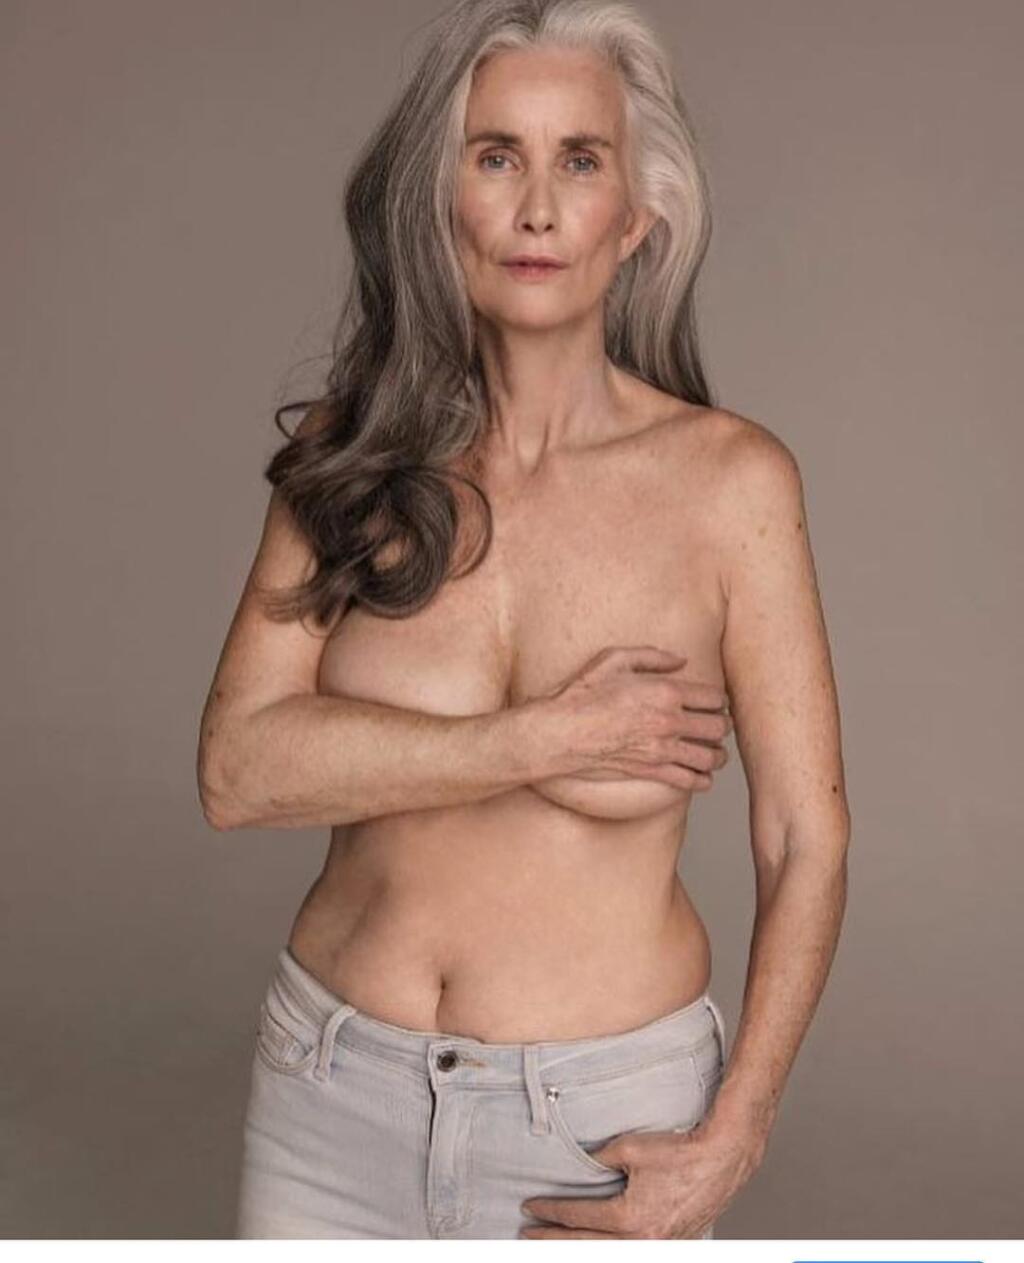 Gray haired nude women - 🧡 Grey Hair Women Nude - Gyan-venu.eu.